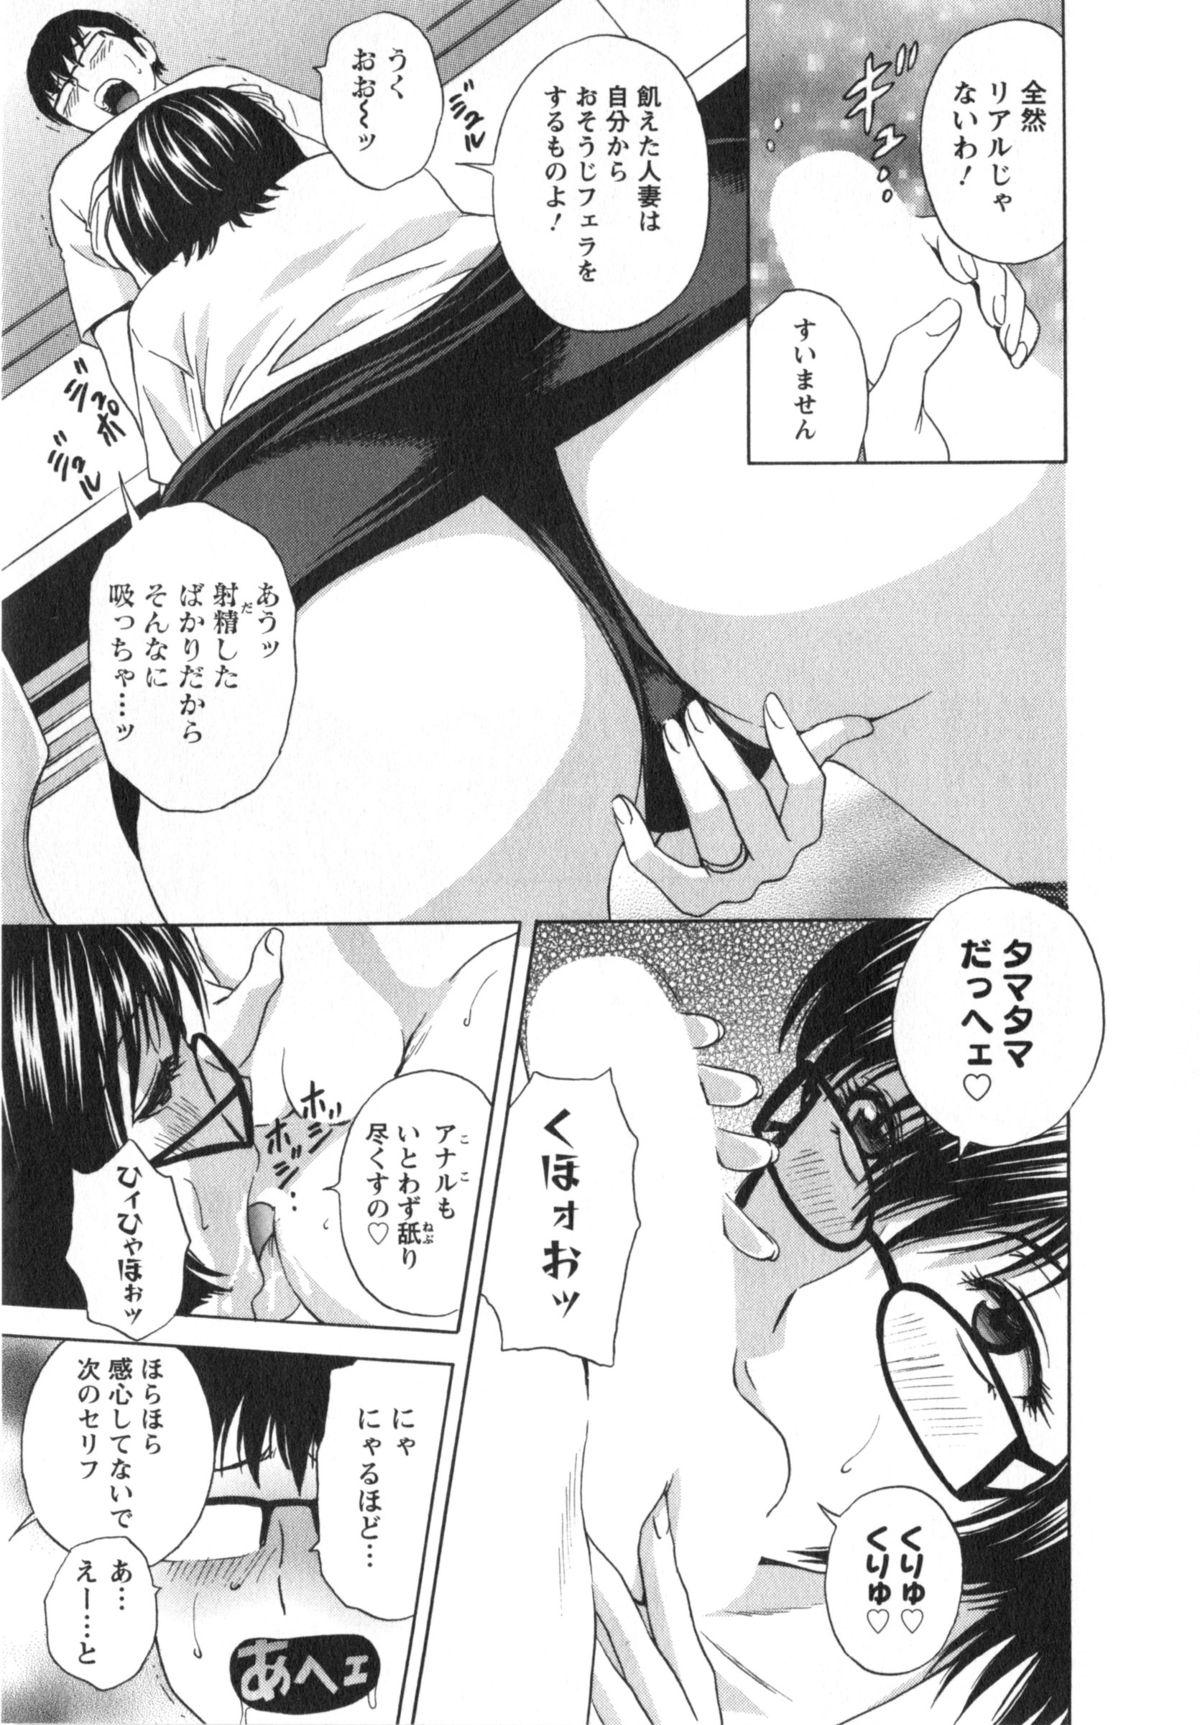 Manga no youna Hitozuma to no Hibi - Days with Married Women such as Comics. 109